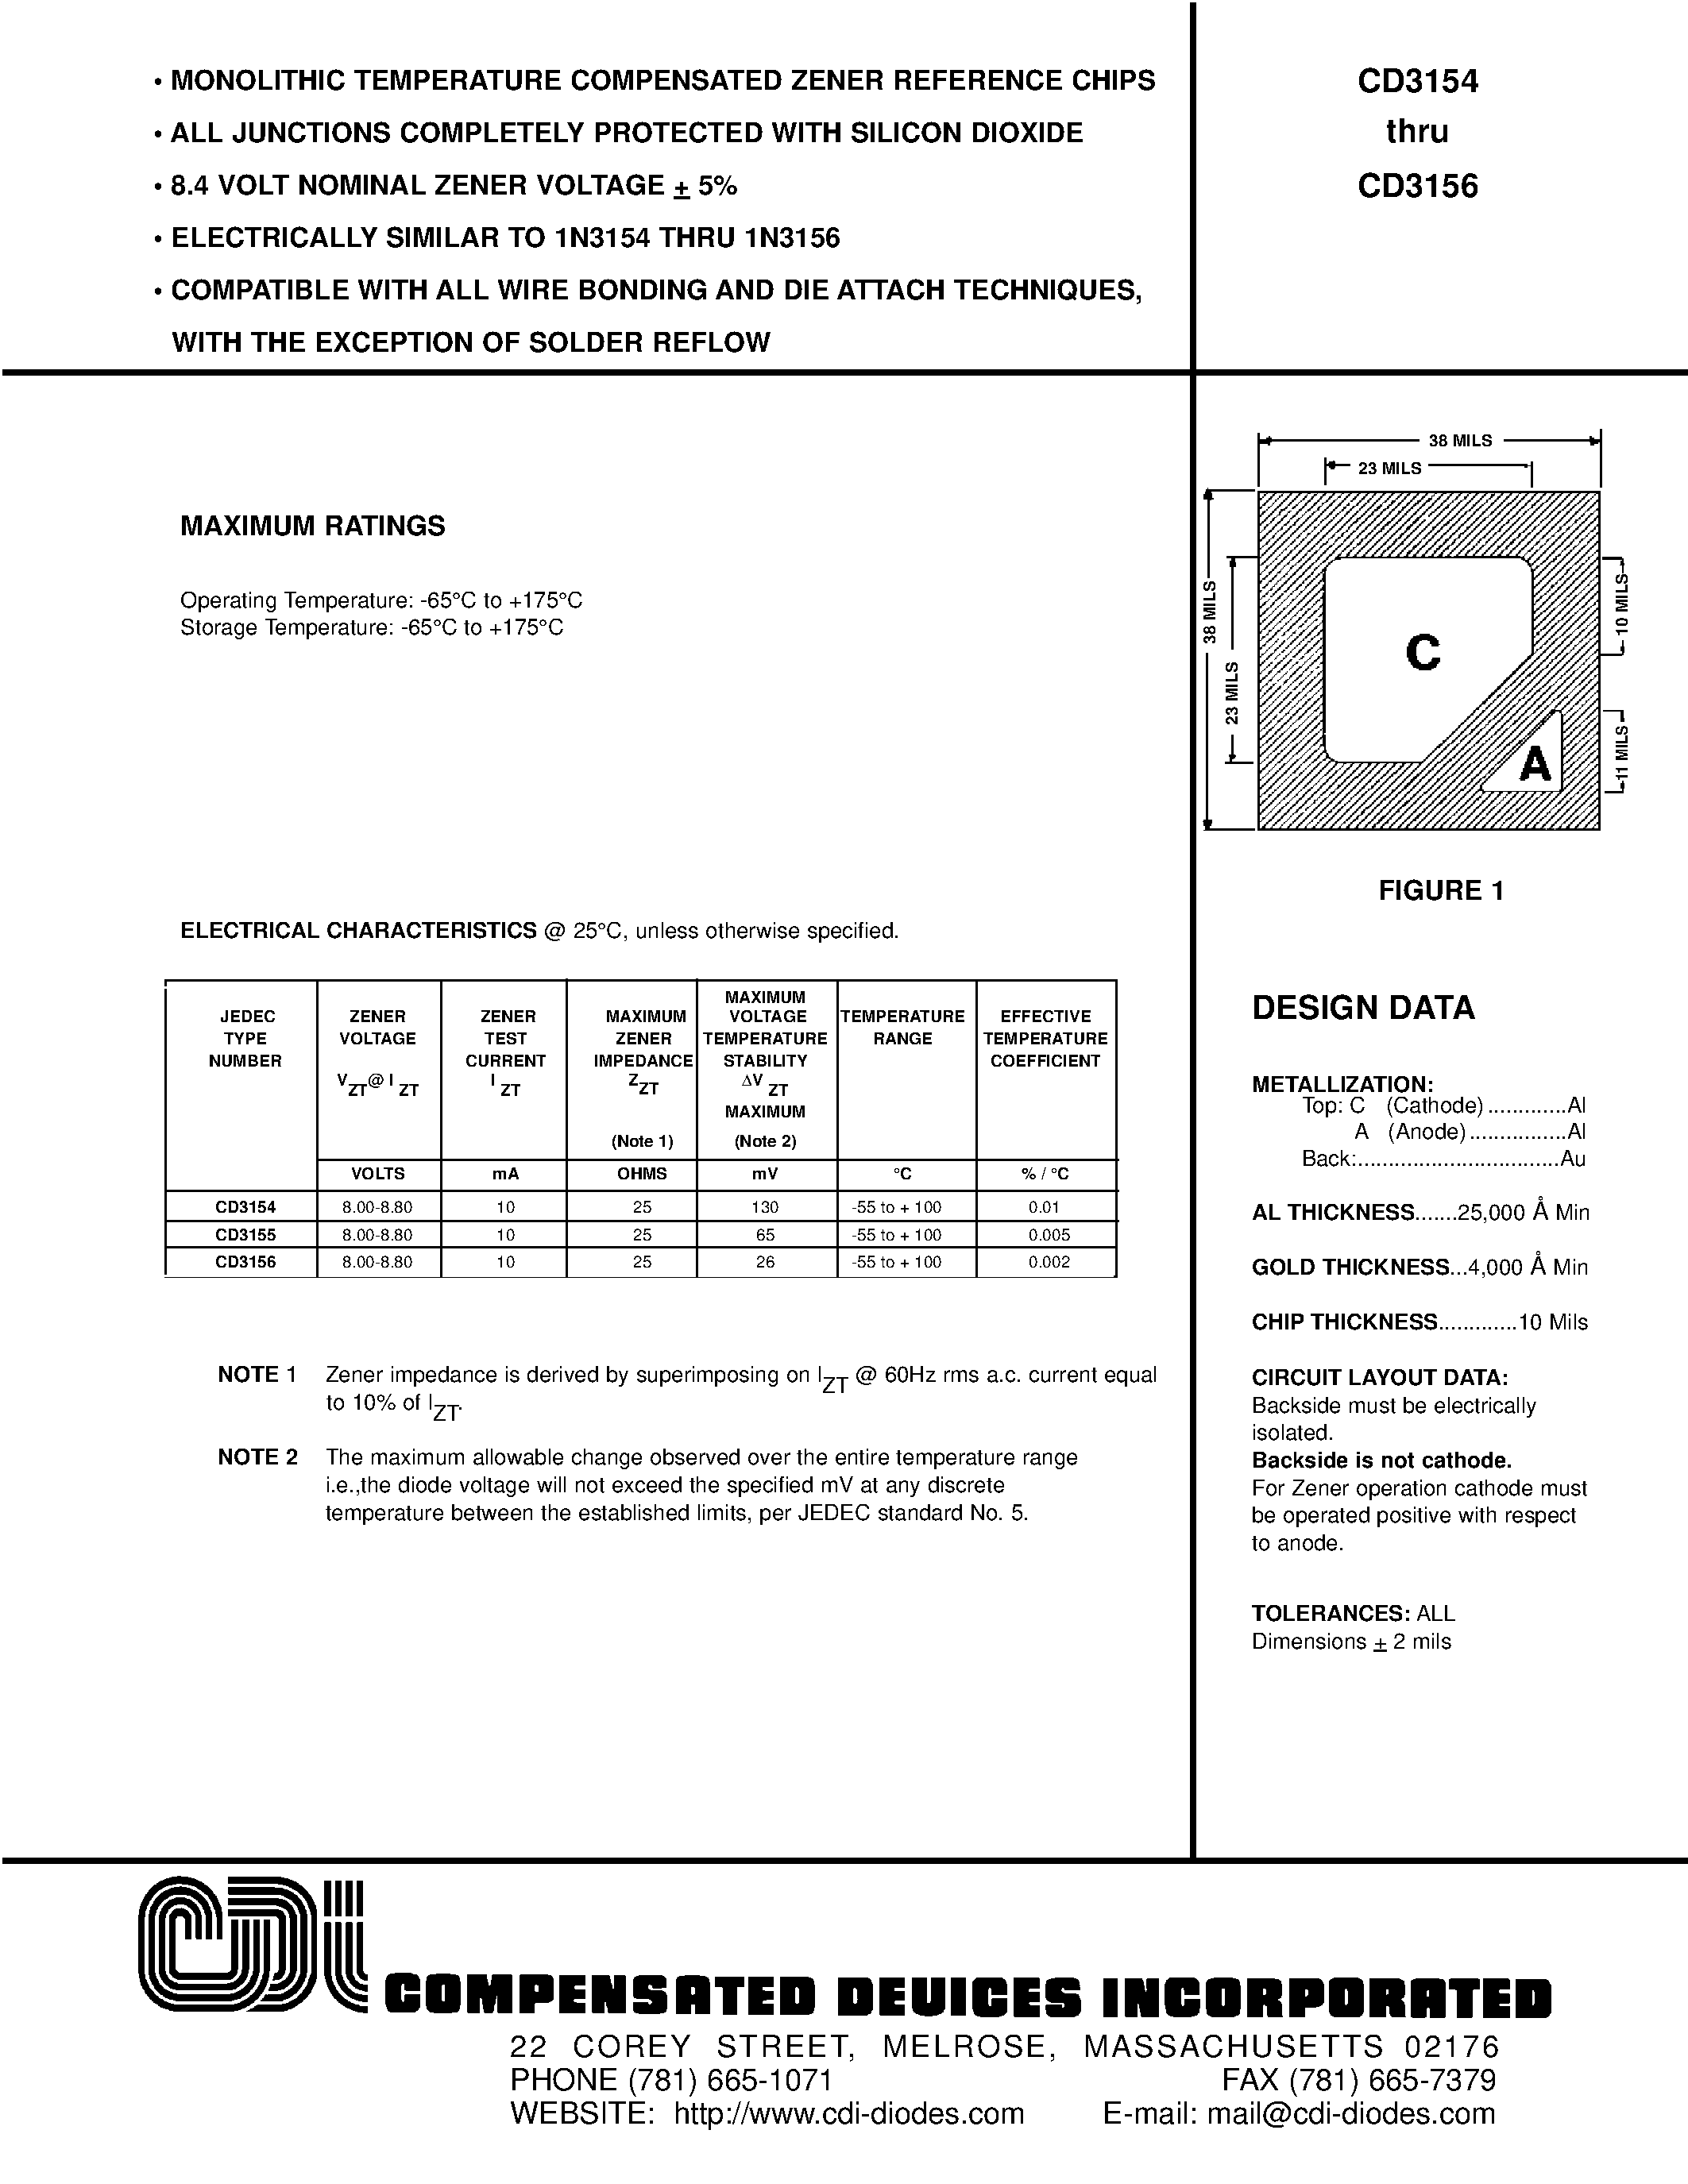 Datasheet CD3155 - 8.4 VOLT NOMINAL ZENER VOLTAGE + 5% page 1